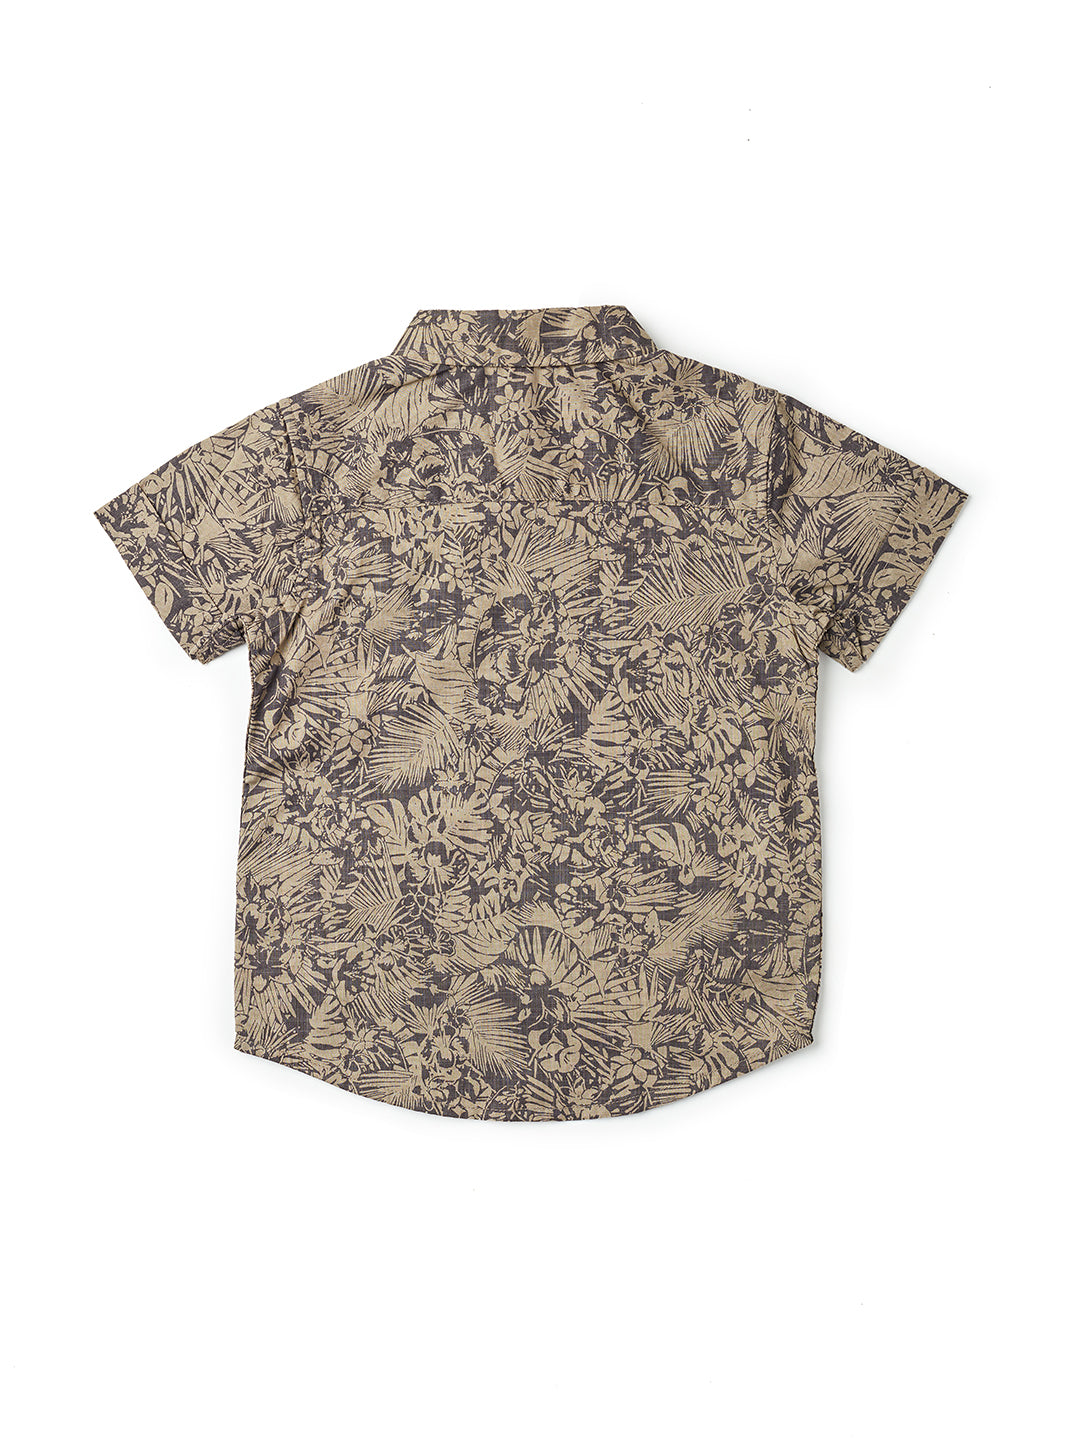 Nuberry Boys Shirt Half Sleeve - Khakki Full Printed